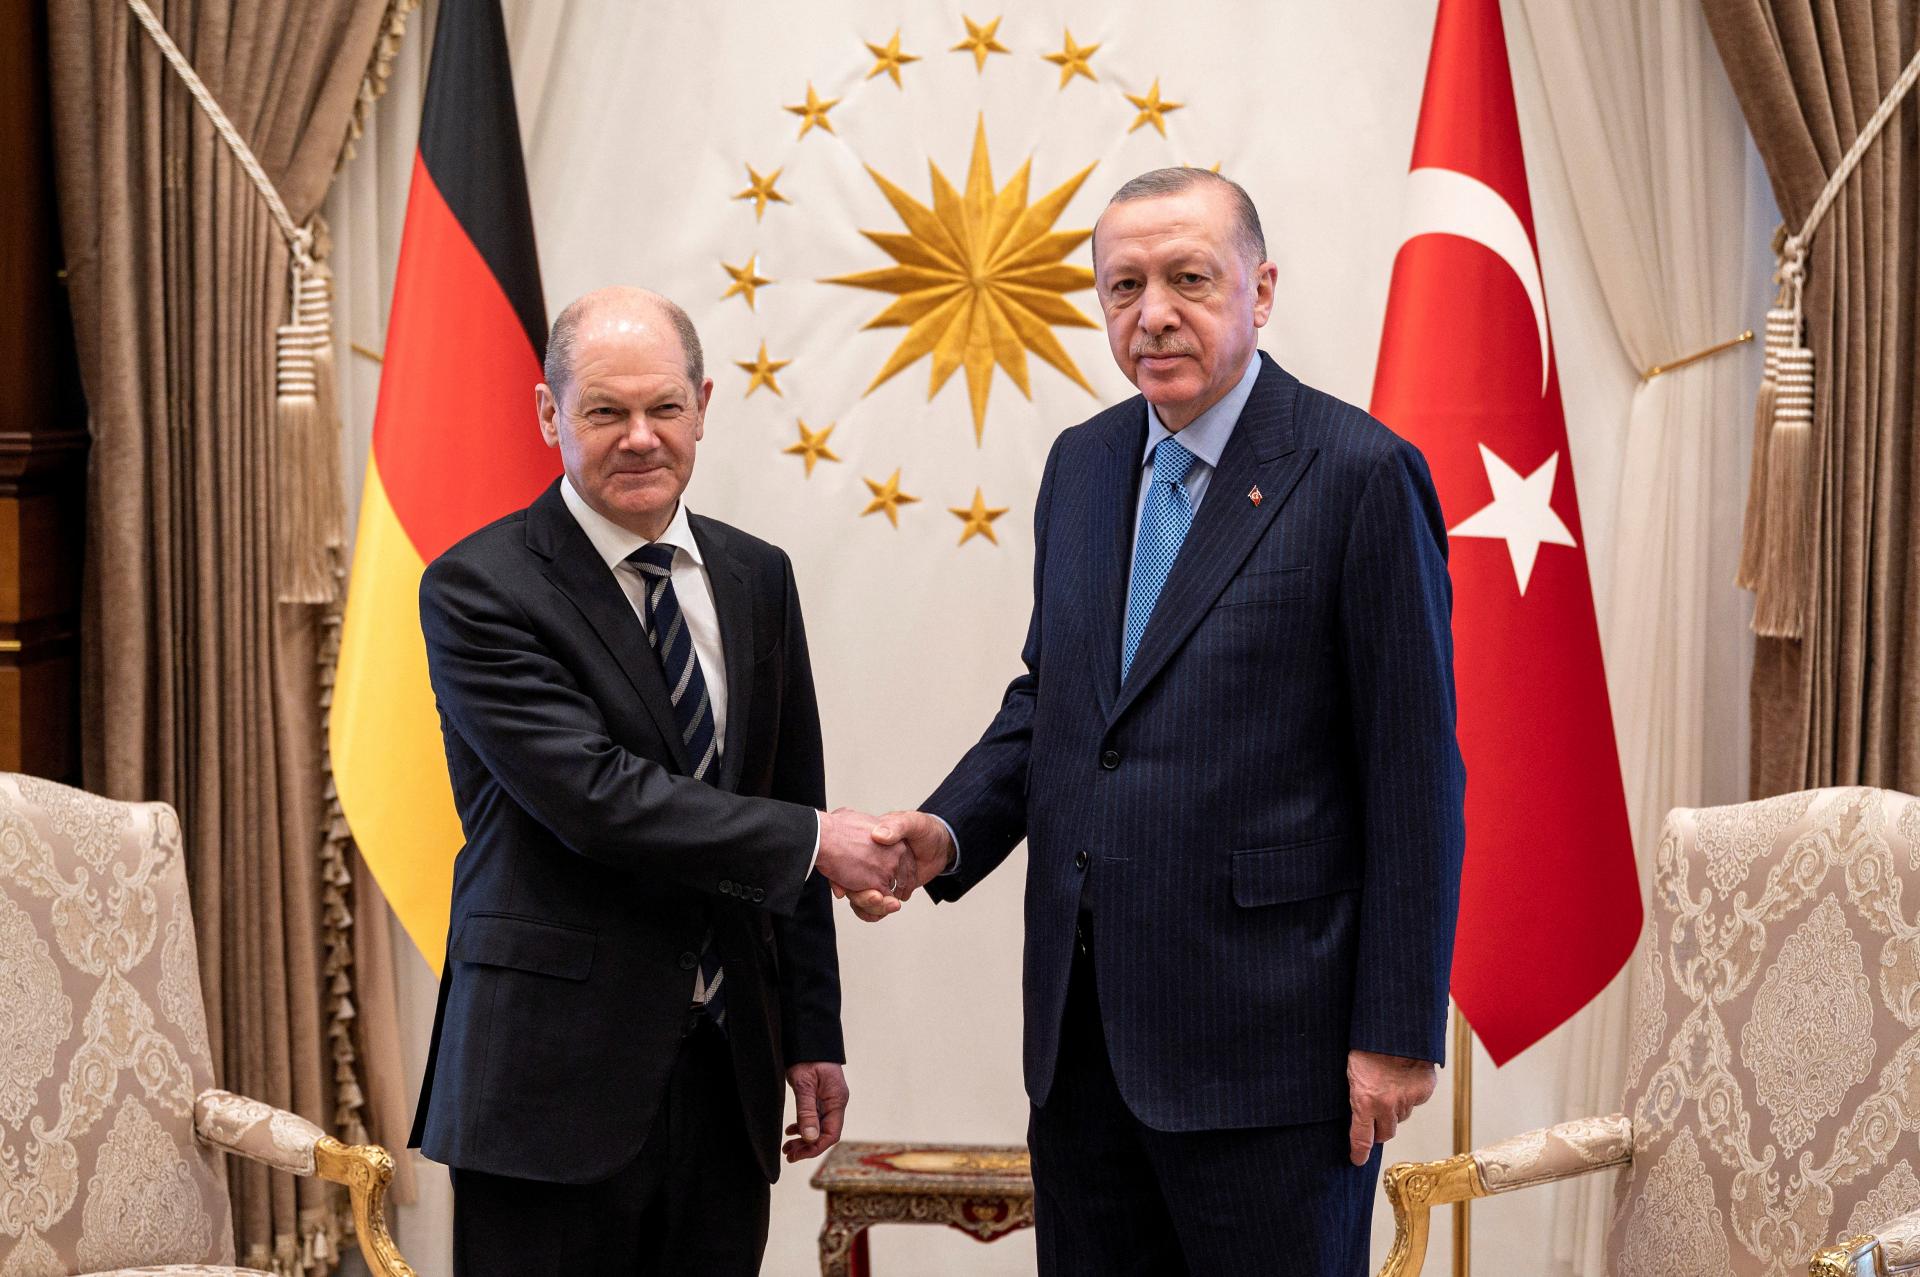 Nový turecký pašalík? Vplyv Erdogana na nemeckú politiku silnie, varujú špióni